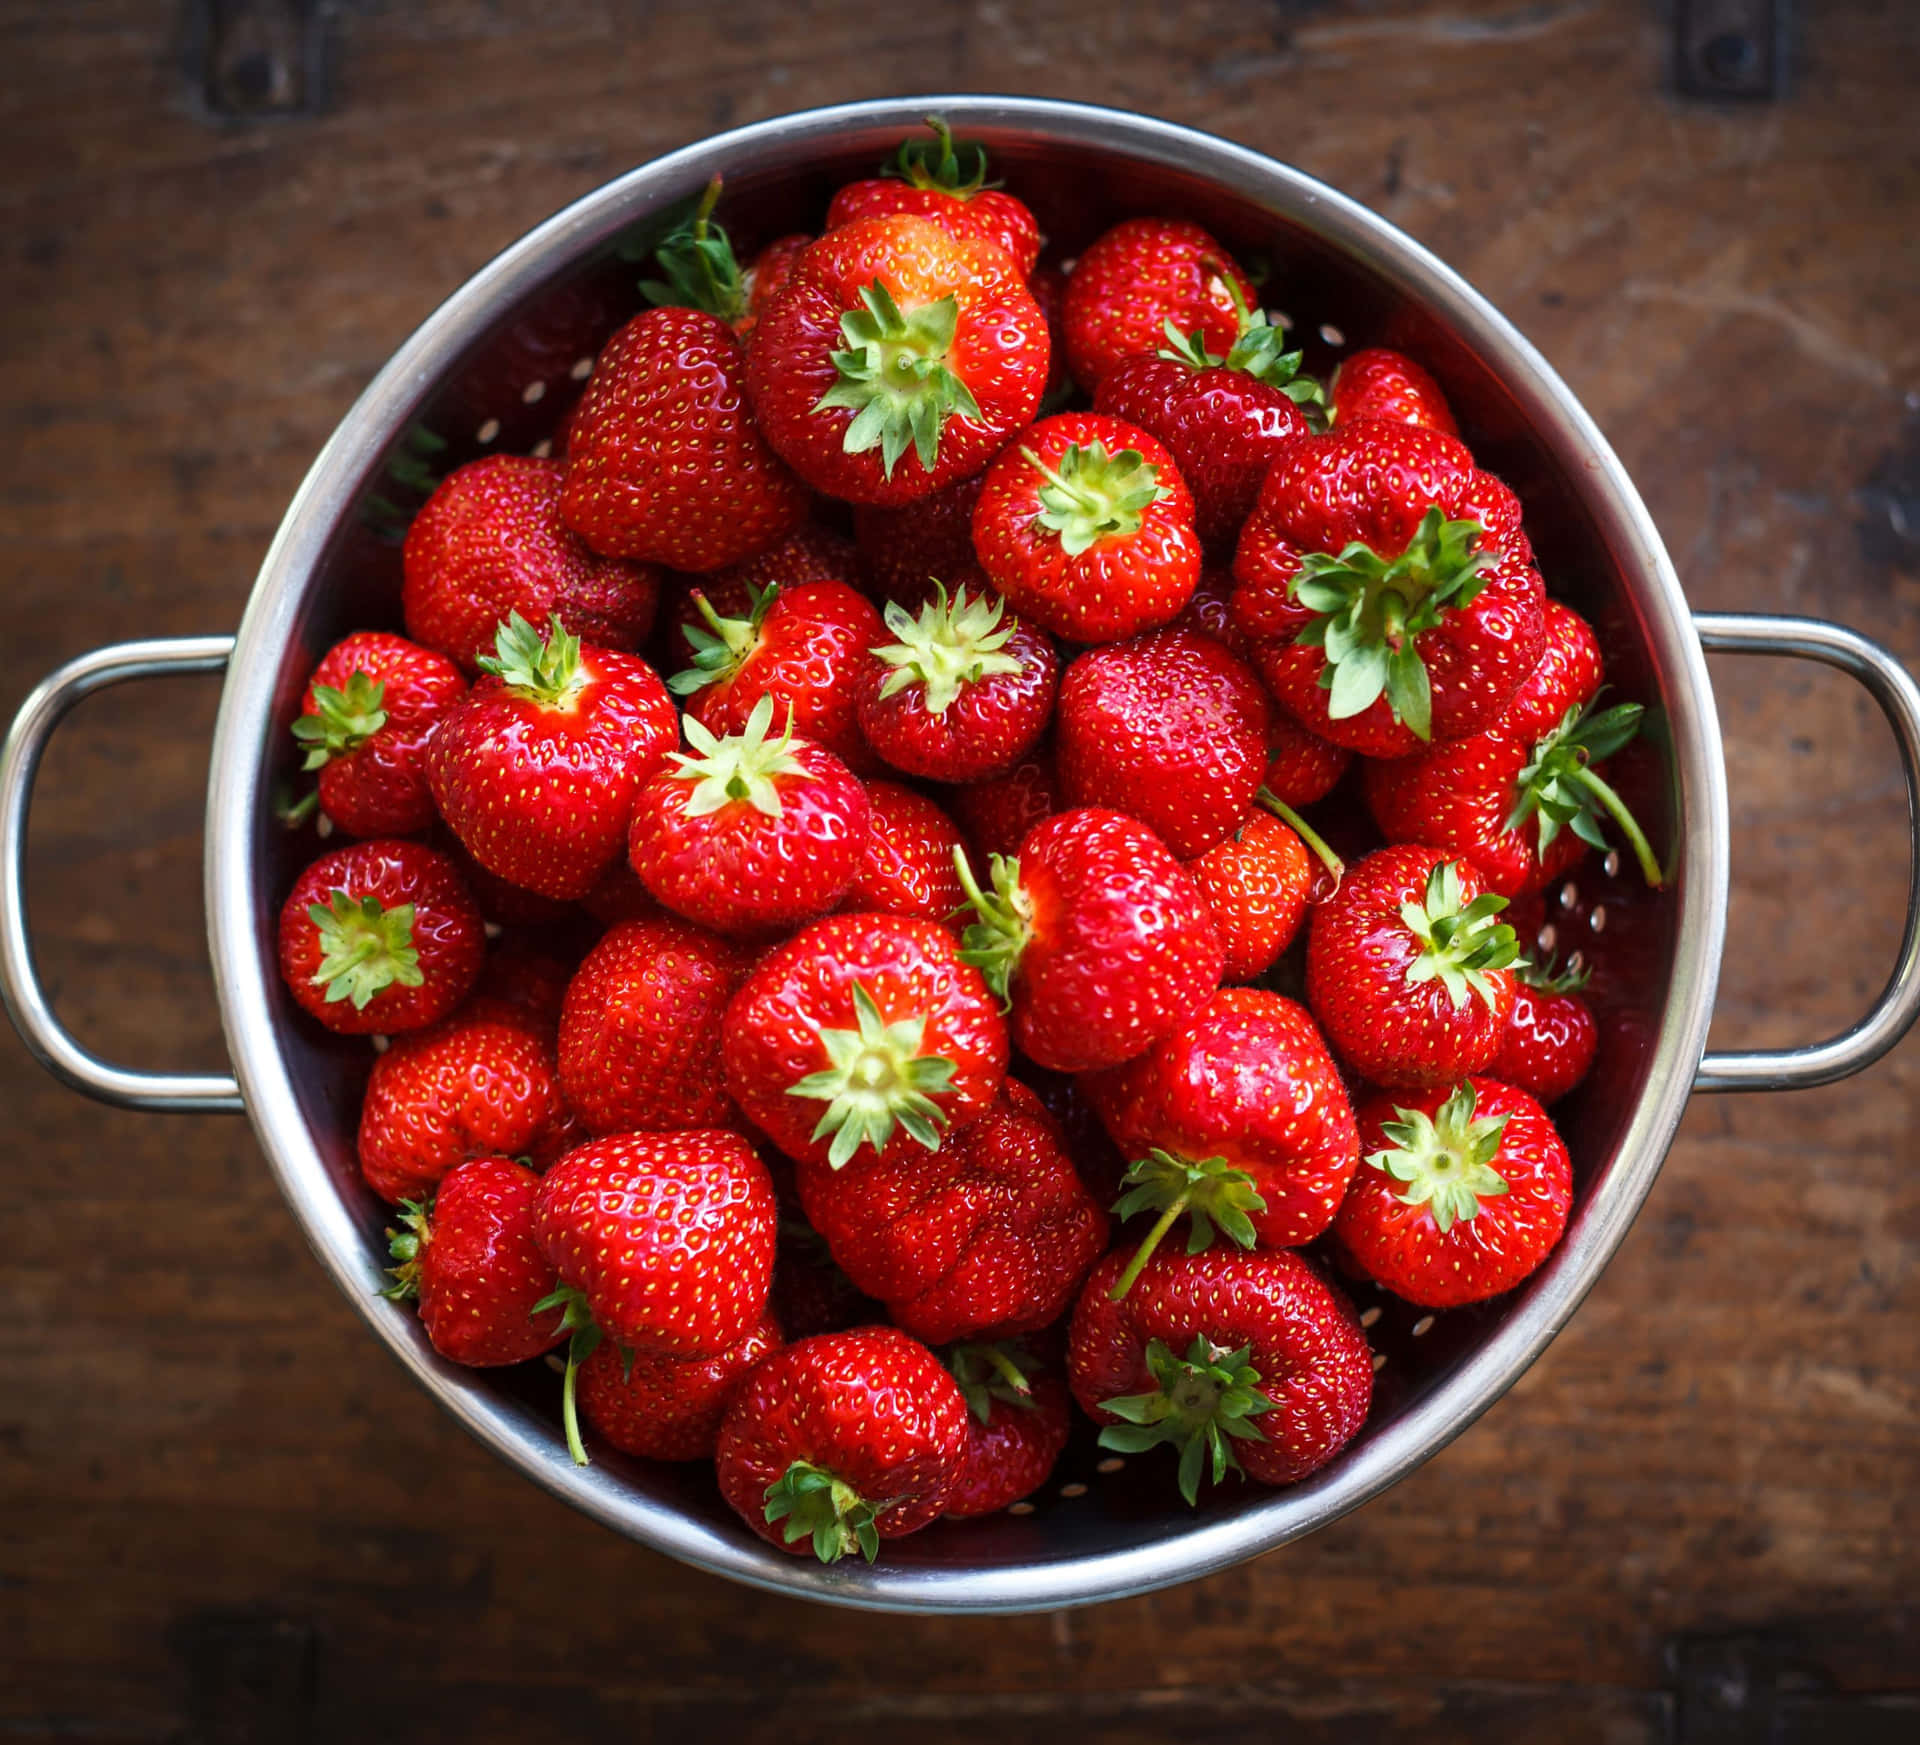 Frischeerwartet Dich Mit Wunderschönen, Saftigen Erdbeeren